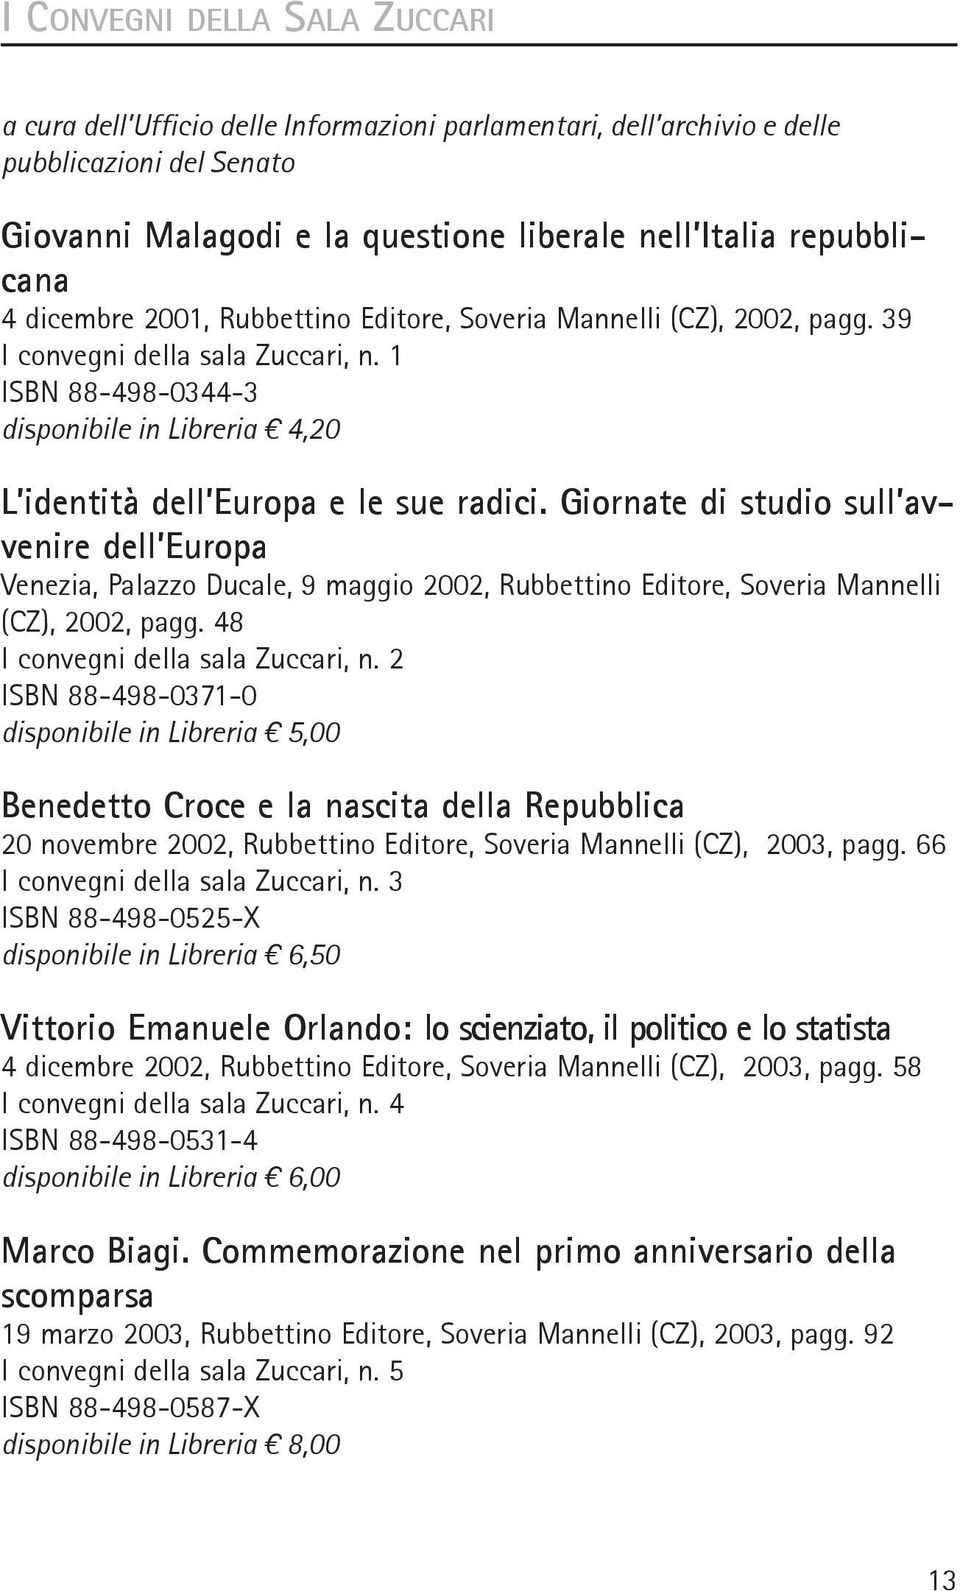 giornate di studio sull avvenire dell europa Venezia, Palazzo Ducale, 9 maggio 2002, Rubbettino Editore, Soveria Mannelli (CZ), 2002, pagg. 48 I convegni della sala Zuccari, n.